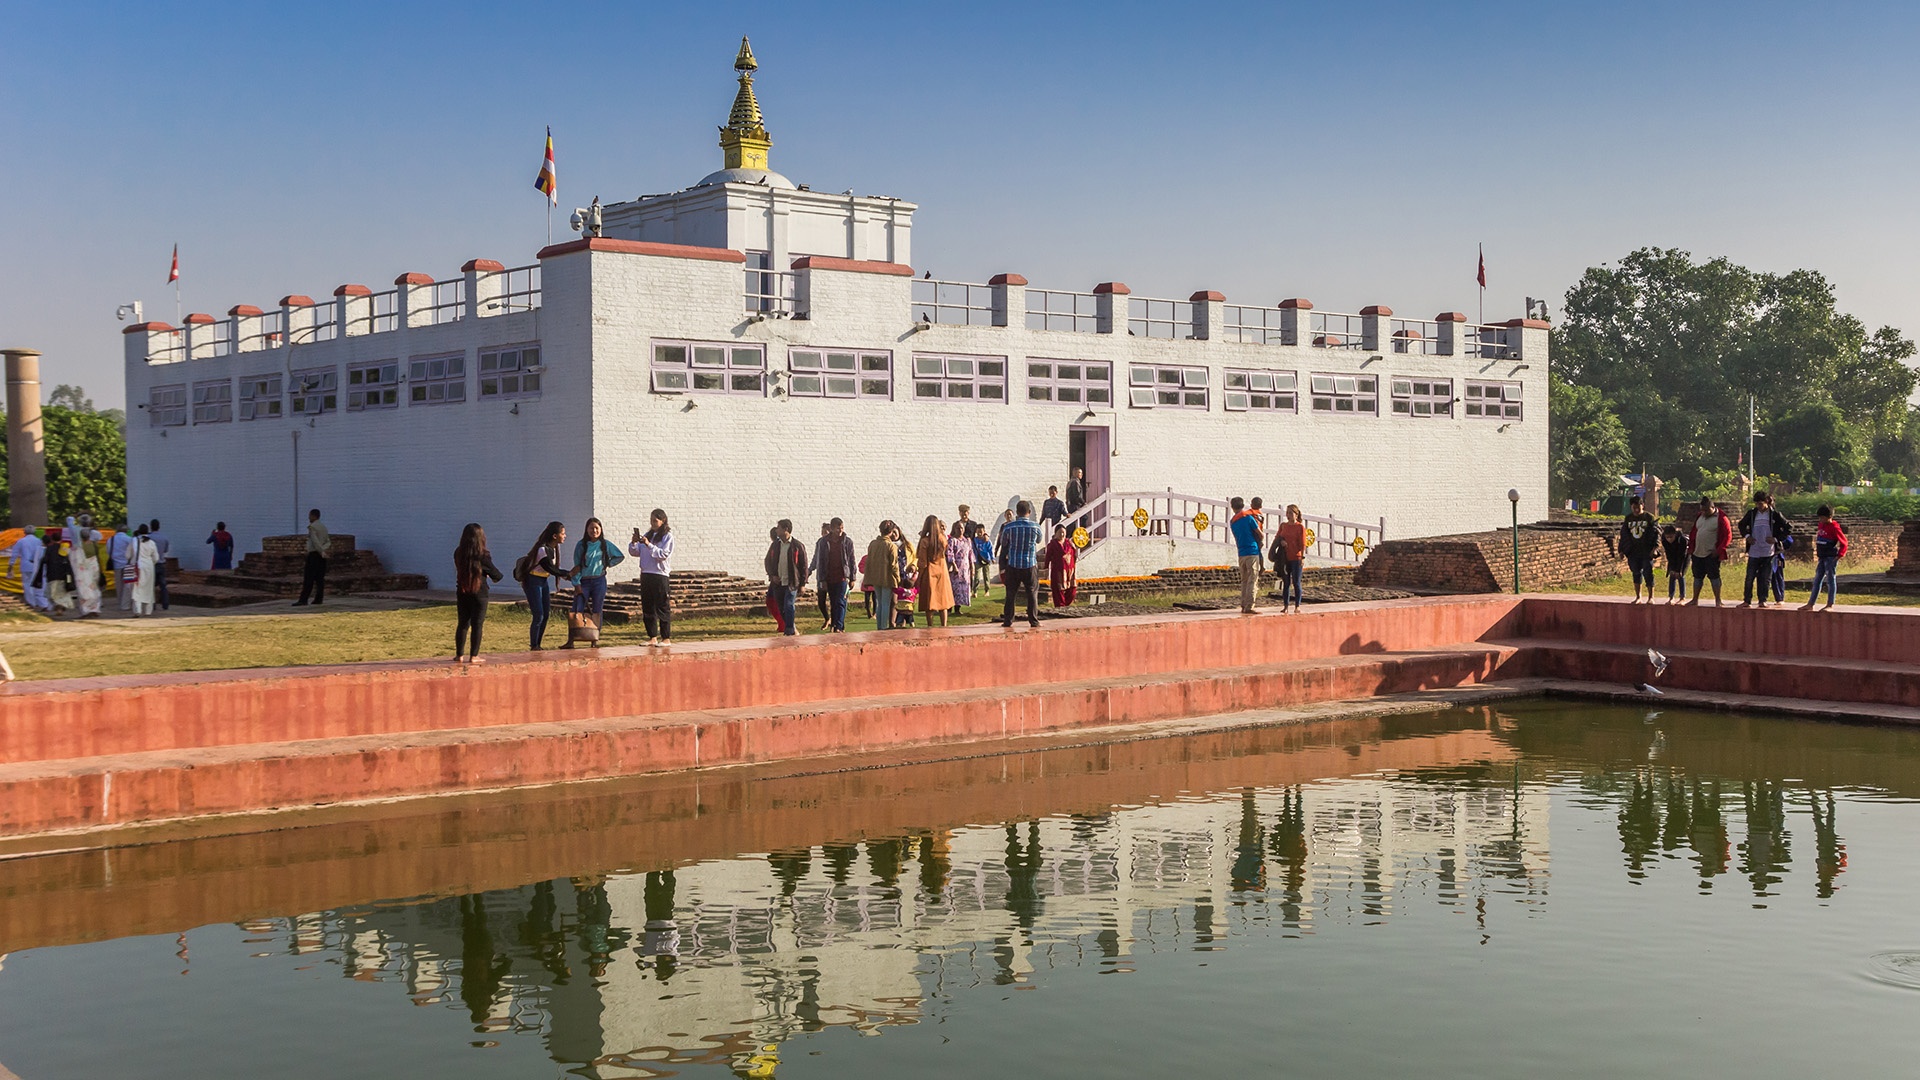 Mayadevi-Tempel mit Spiegelung im Wasser in Lumbini, Nepal